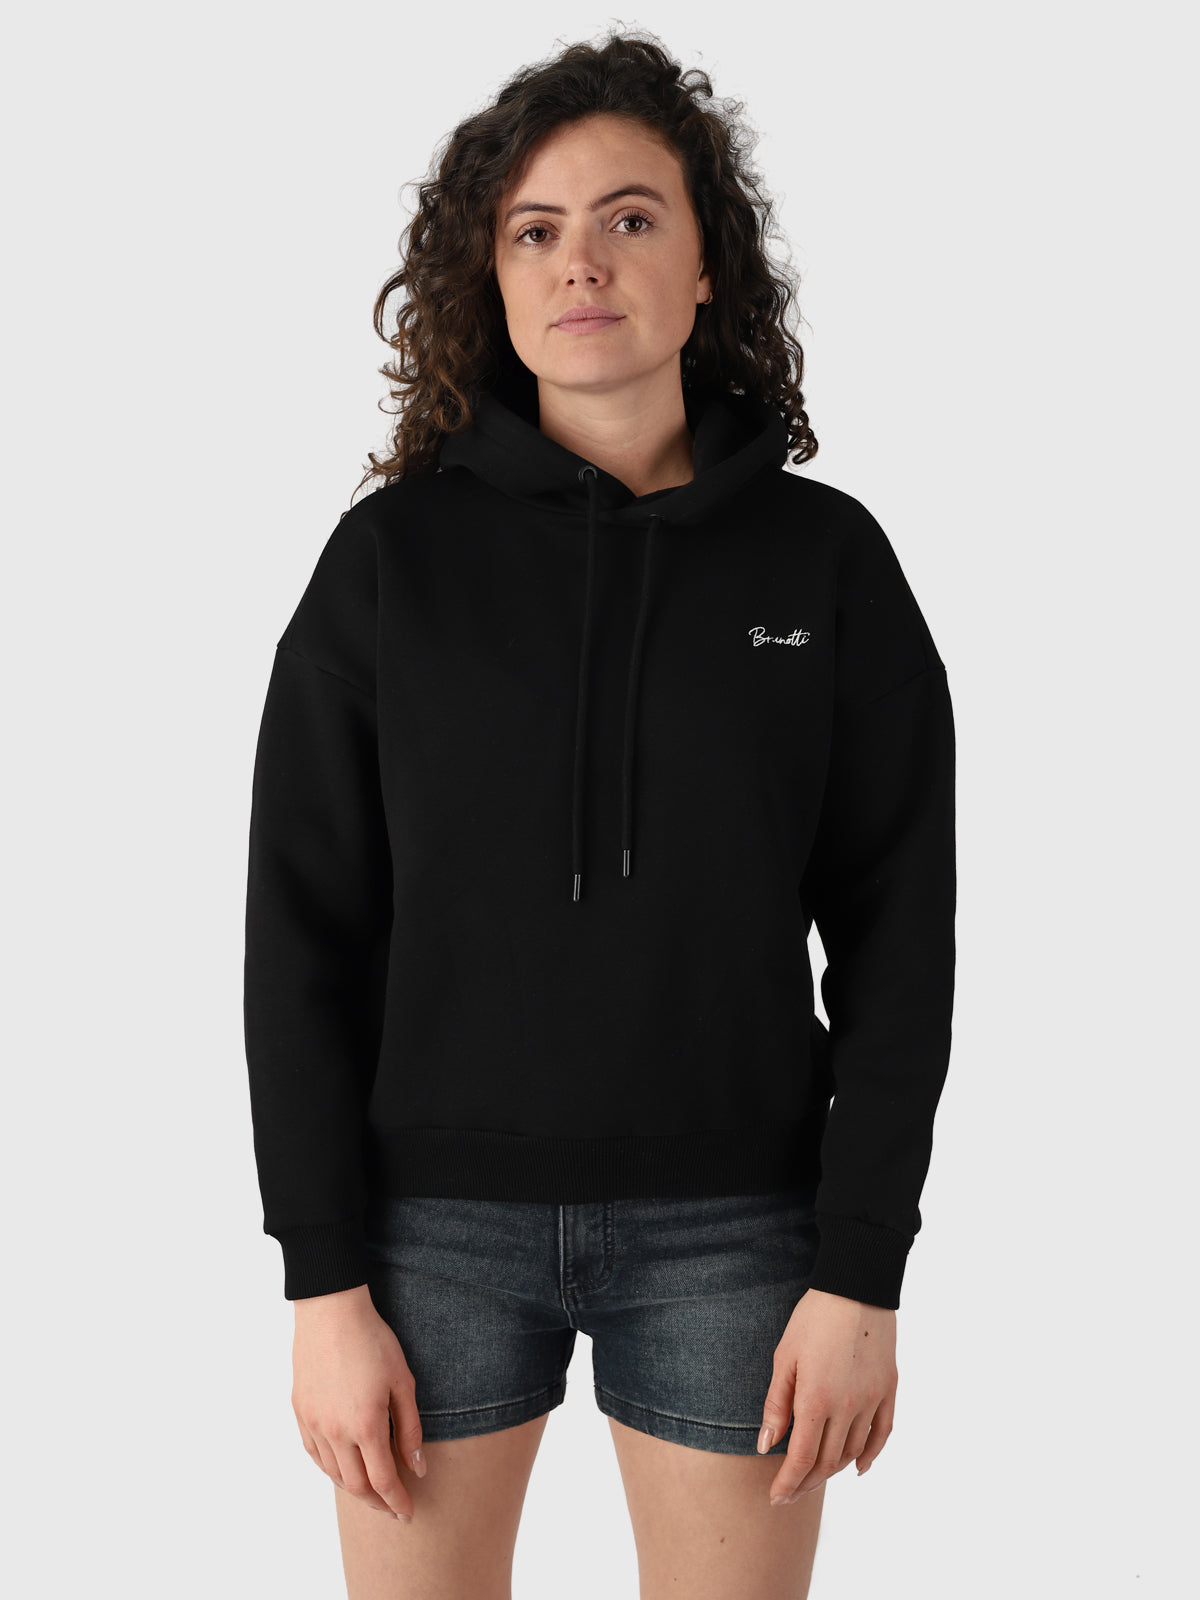 Donna-N Women Sweater | Black